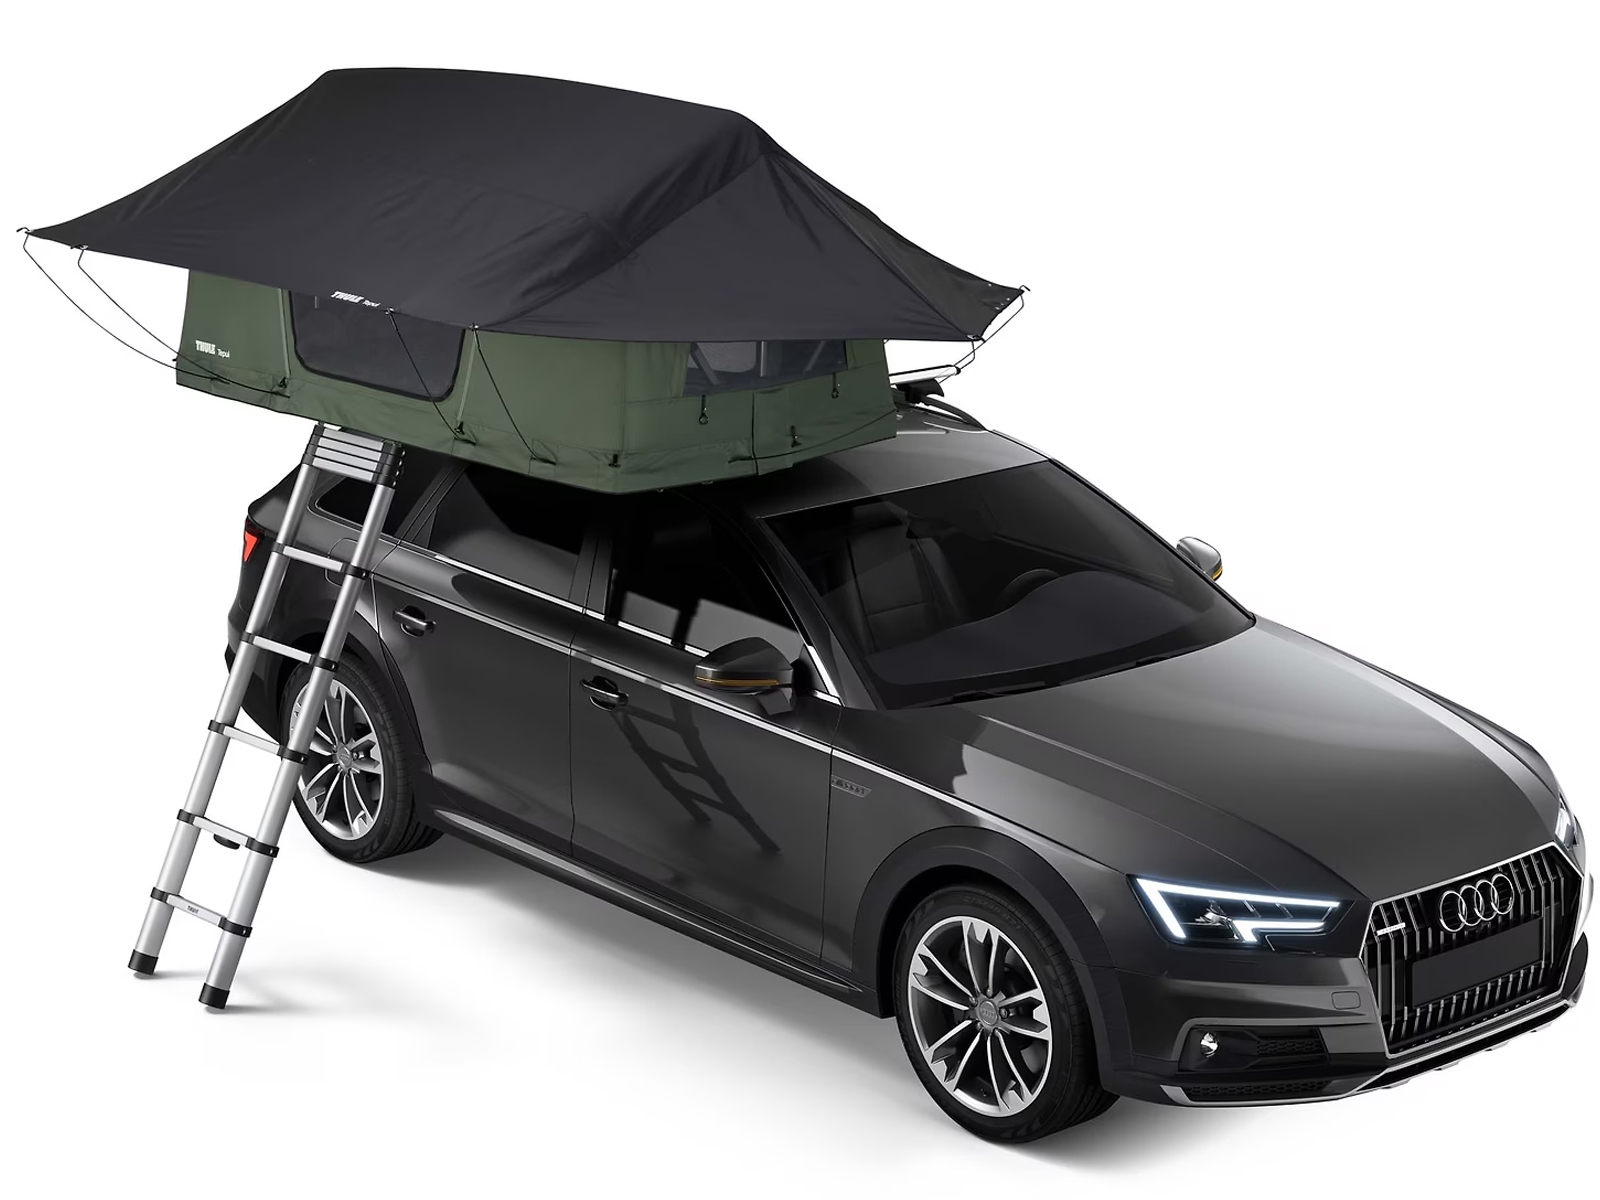 2020 Volkswagen Tiguan Truck Bed Tents | RealTruck